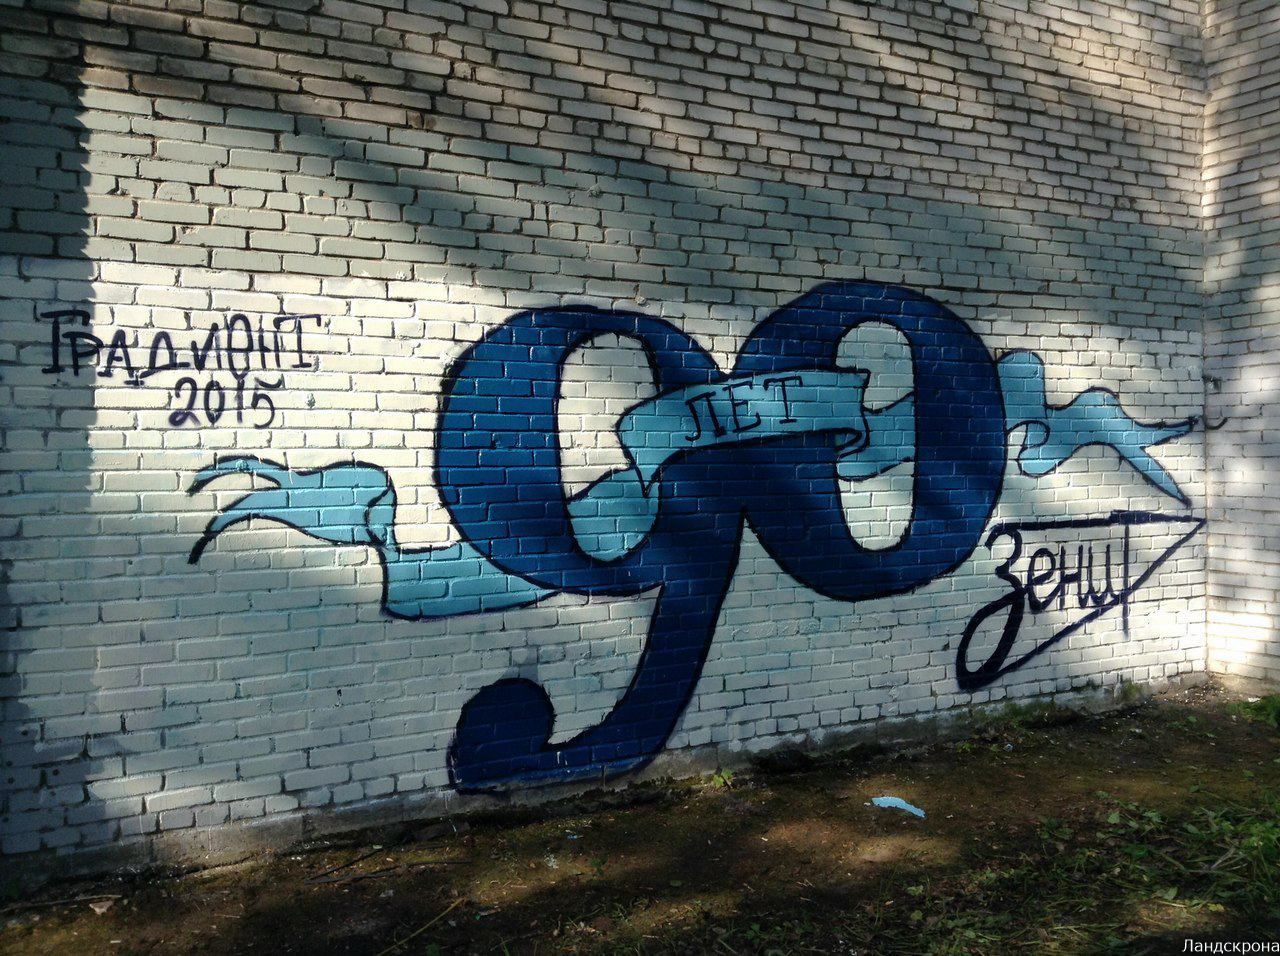 Граффити спартак